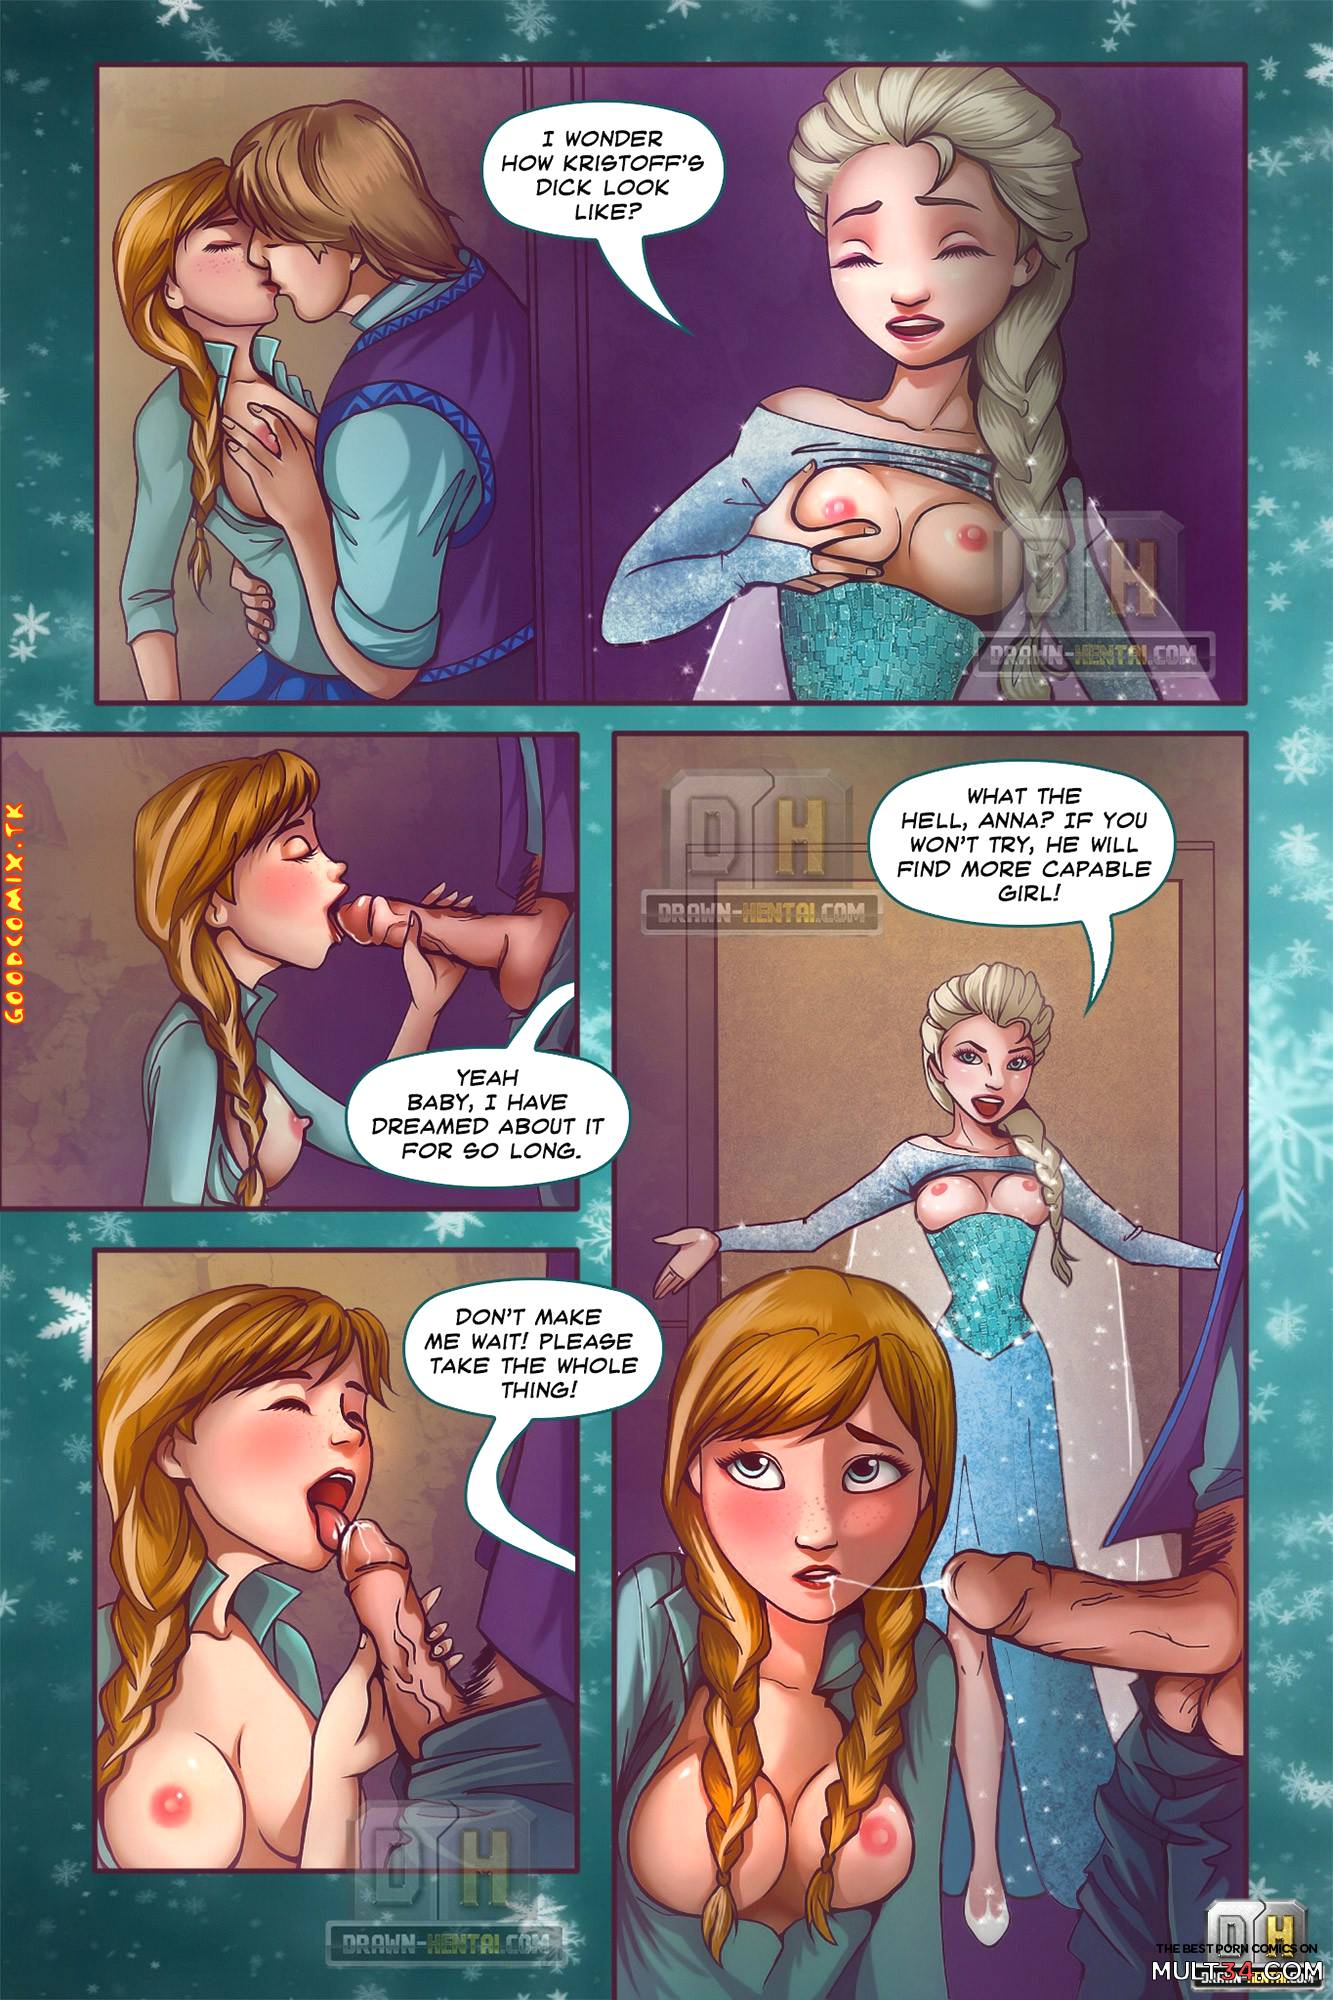 1333px x 2000px - Disney Frozen porn comic - the best cartoon porn comics, Rule 34 | MULT34